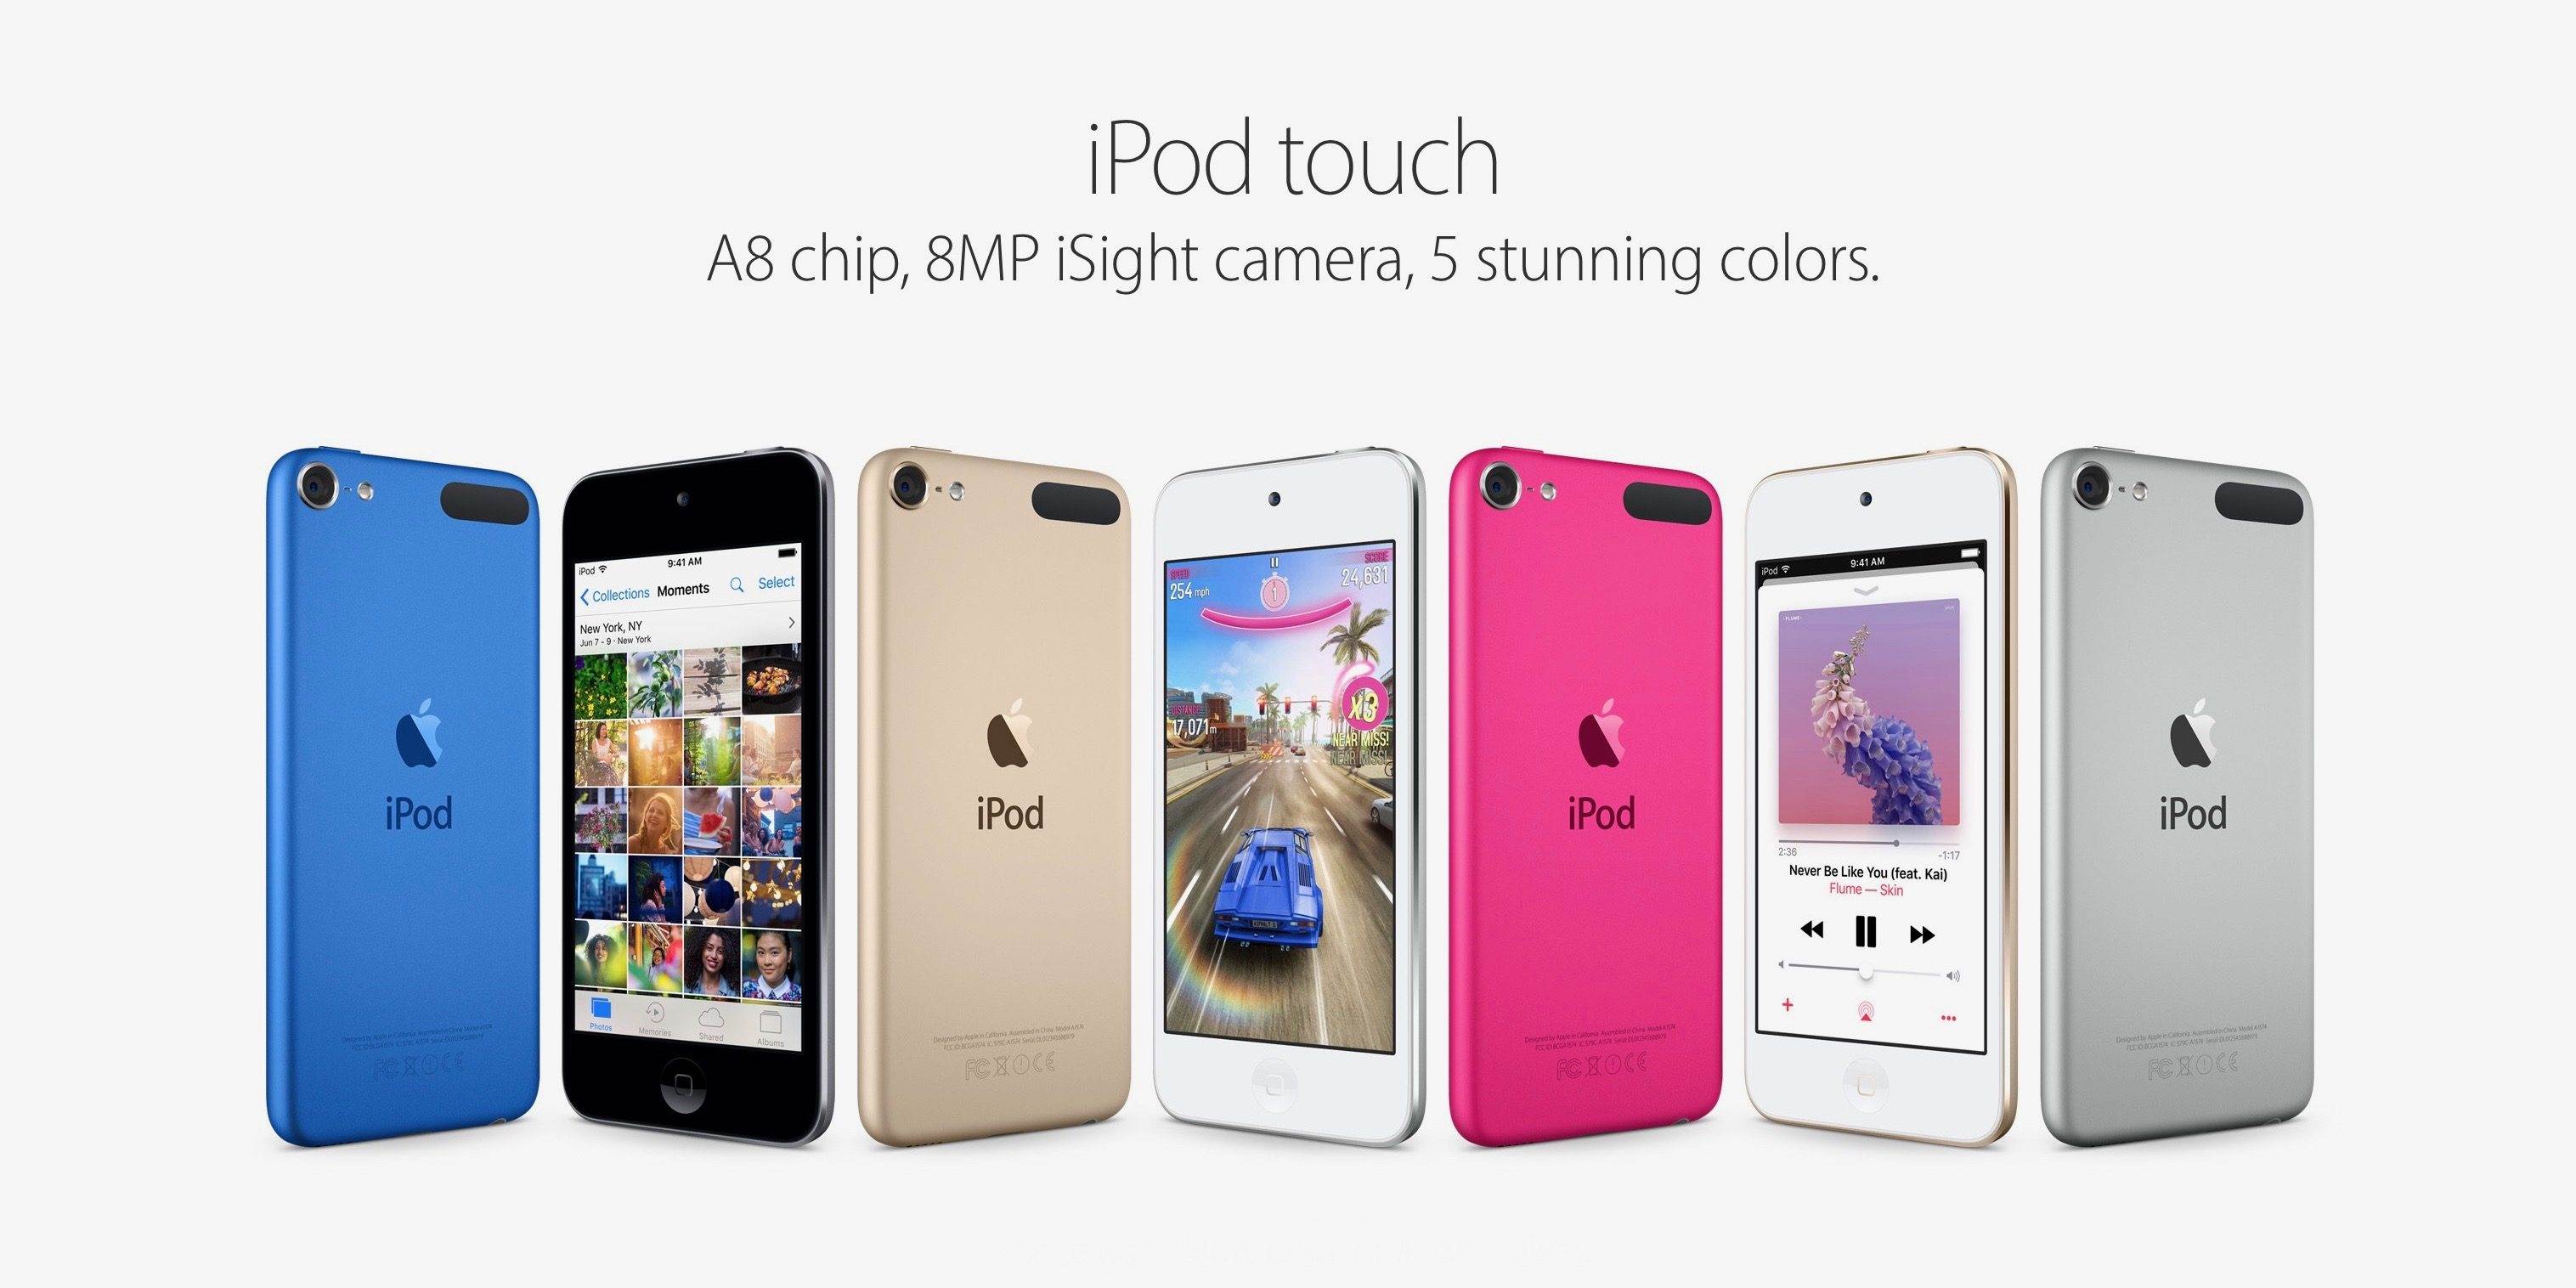 Apple kończy produkcję iPod touch ciekawostki koniec ipod touch, iPod Touch, apple przestaje przedawac ipod touch  Firma Apple ogłosiła wczoraj, że oficjalnie kończy produkcję iPod touch, który został zastąpiony innymi urządzeniami, takimi jak iPhone i iPad. ipodtouch